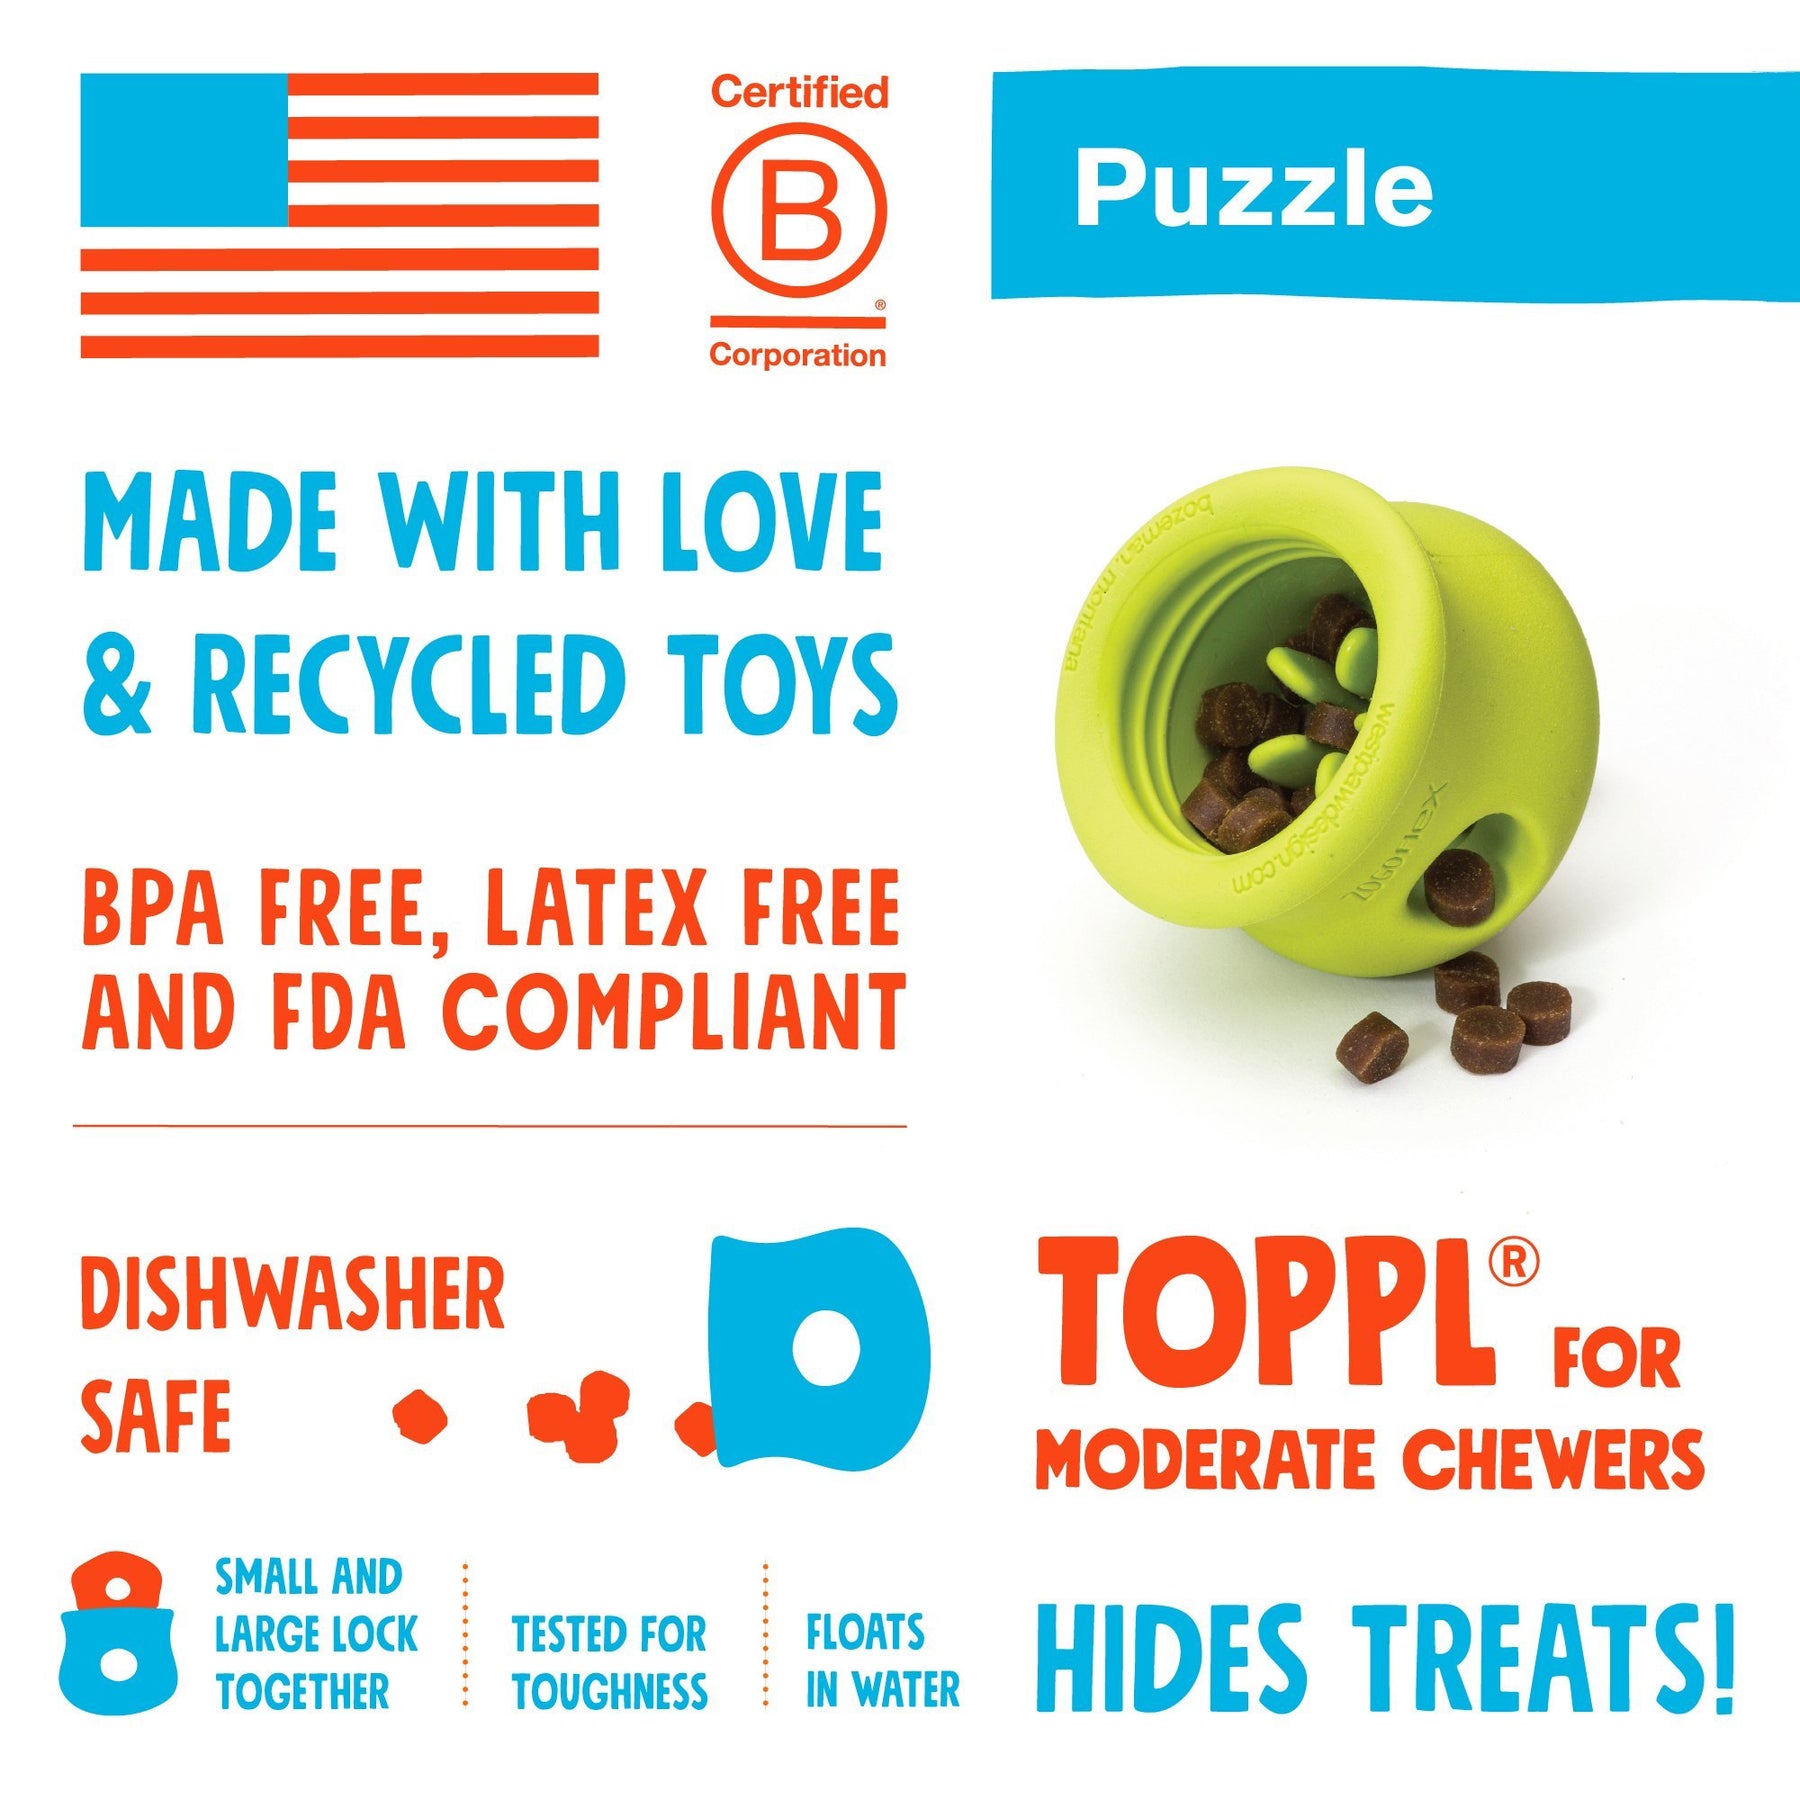 West Paw Design Zogoflex Toppl Dog Treat Puzzle Toy — Happy Dog Wellness